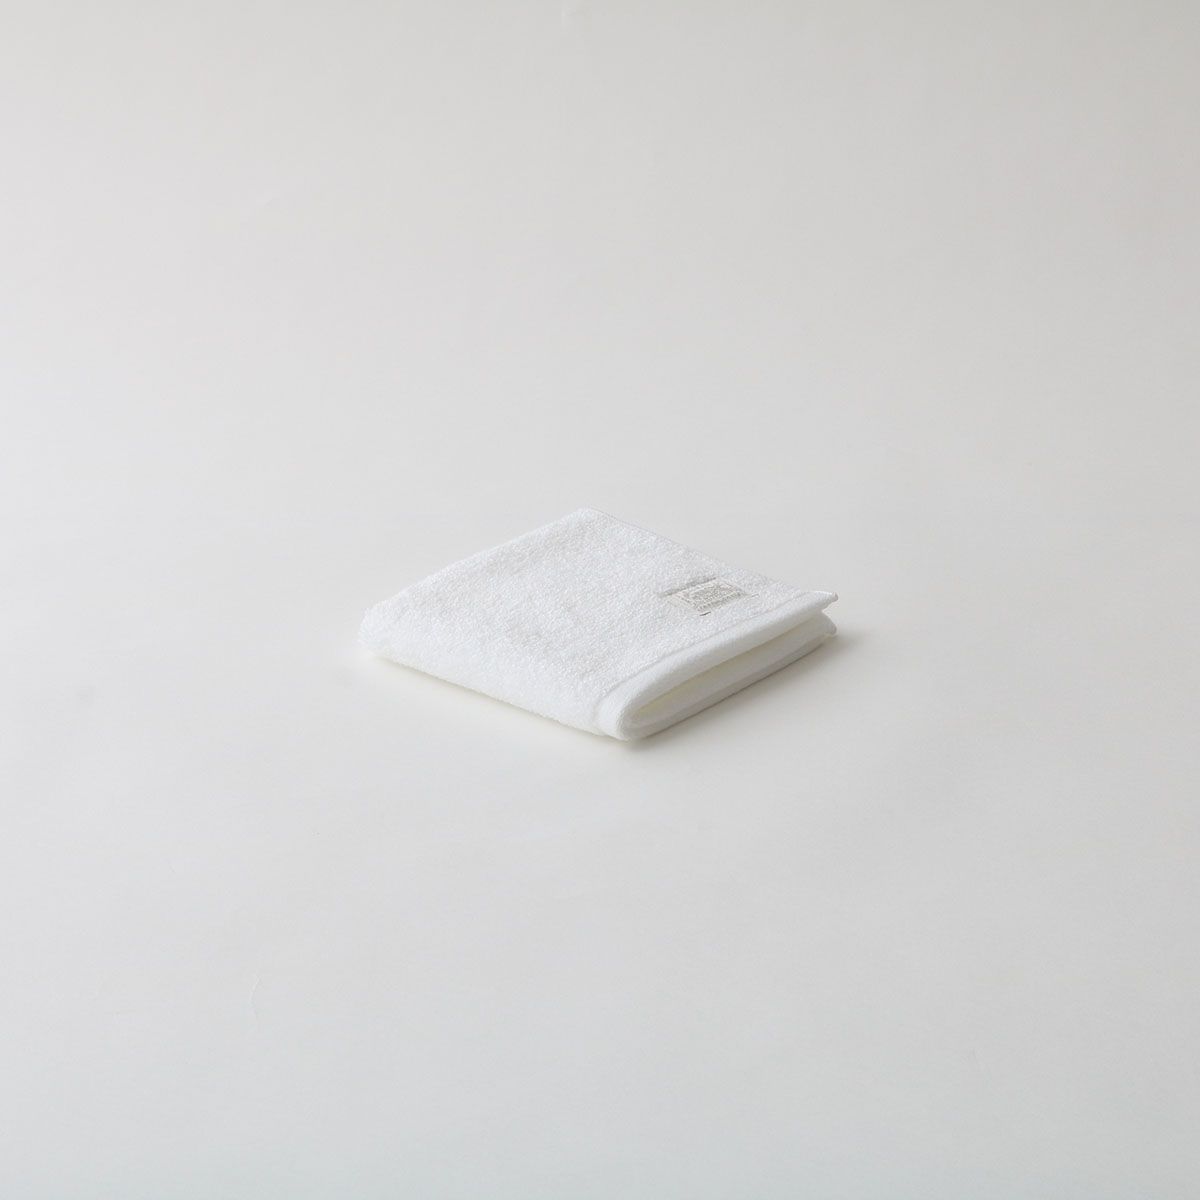 超甘撚りエクストラリッチハンド・ハンカチ & HAND SOAP セット (麹塵・ホワイト) フリー FREE